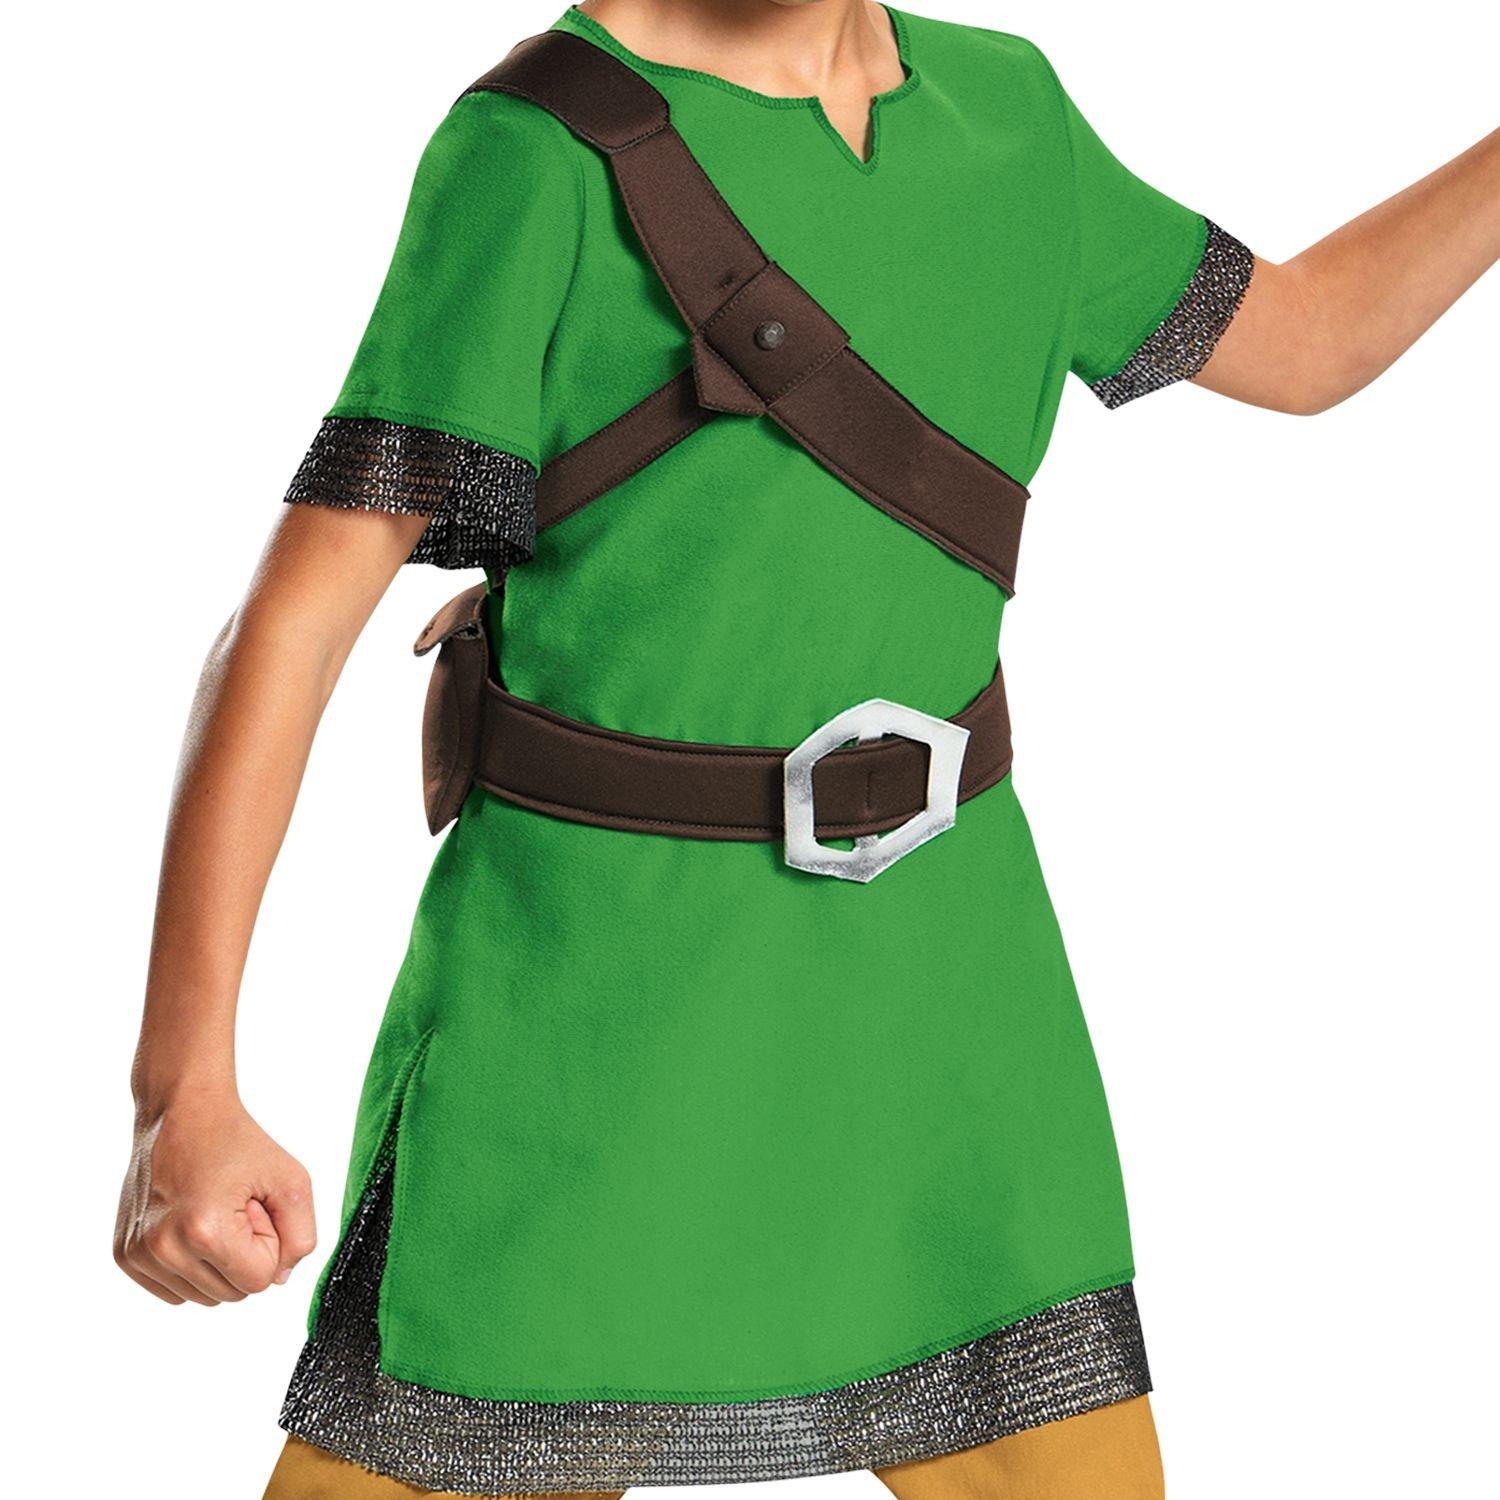 Kids Link Costume - The Legend of Zelda